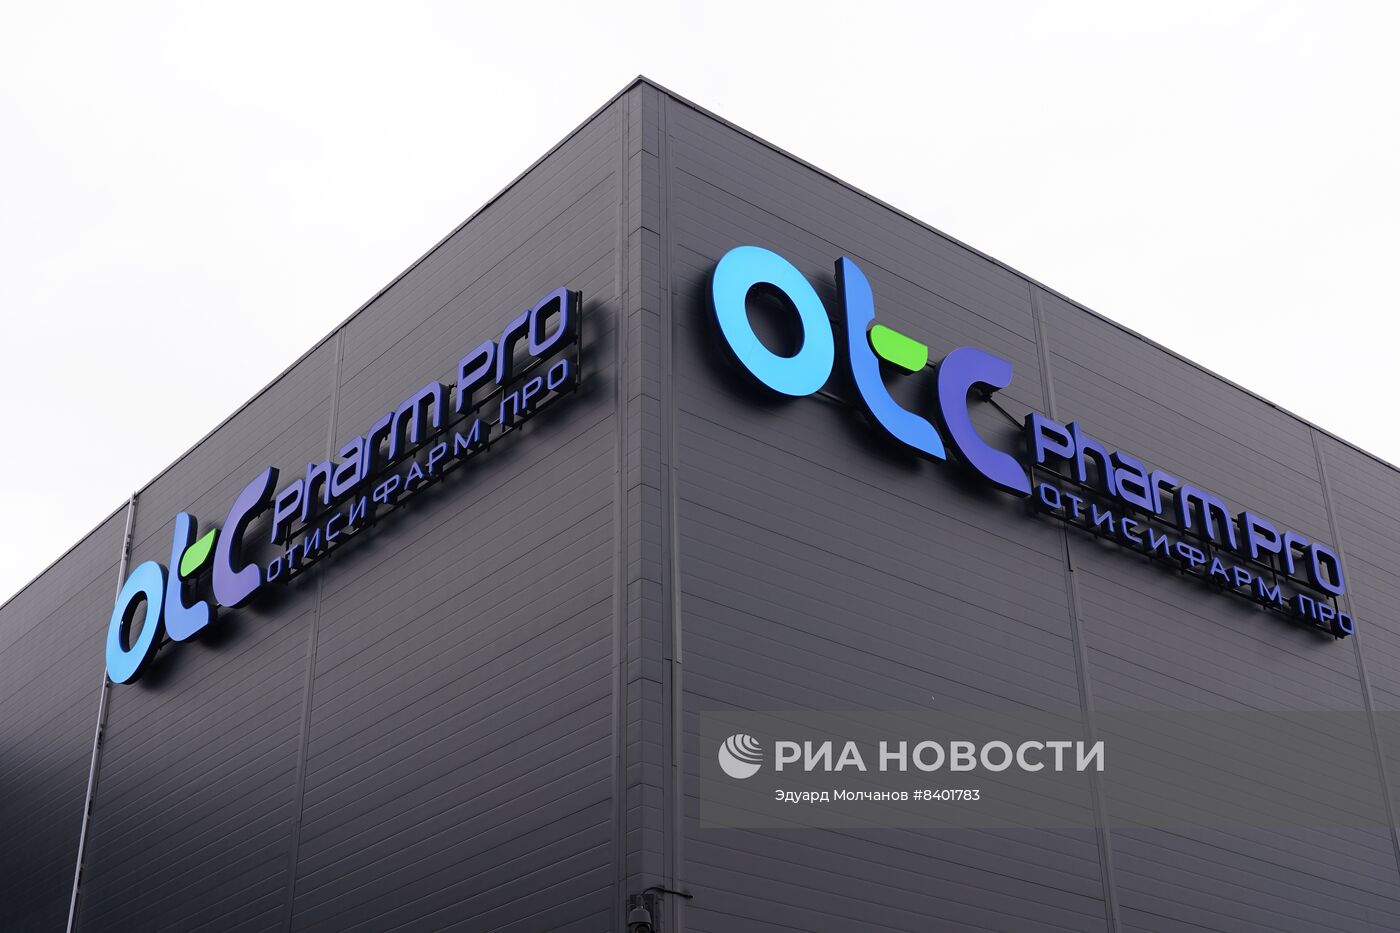 Открытие фармацевтического производства "Отисифарм Про" в Калининграде